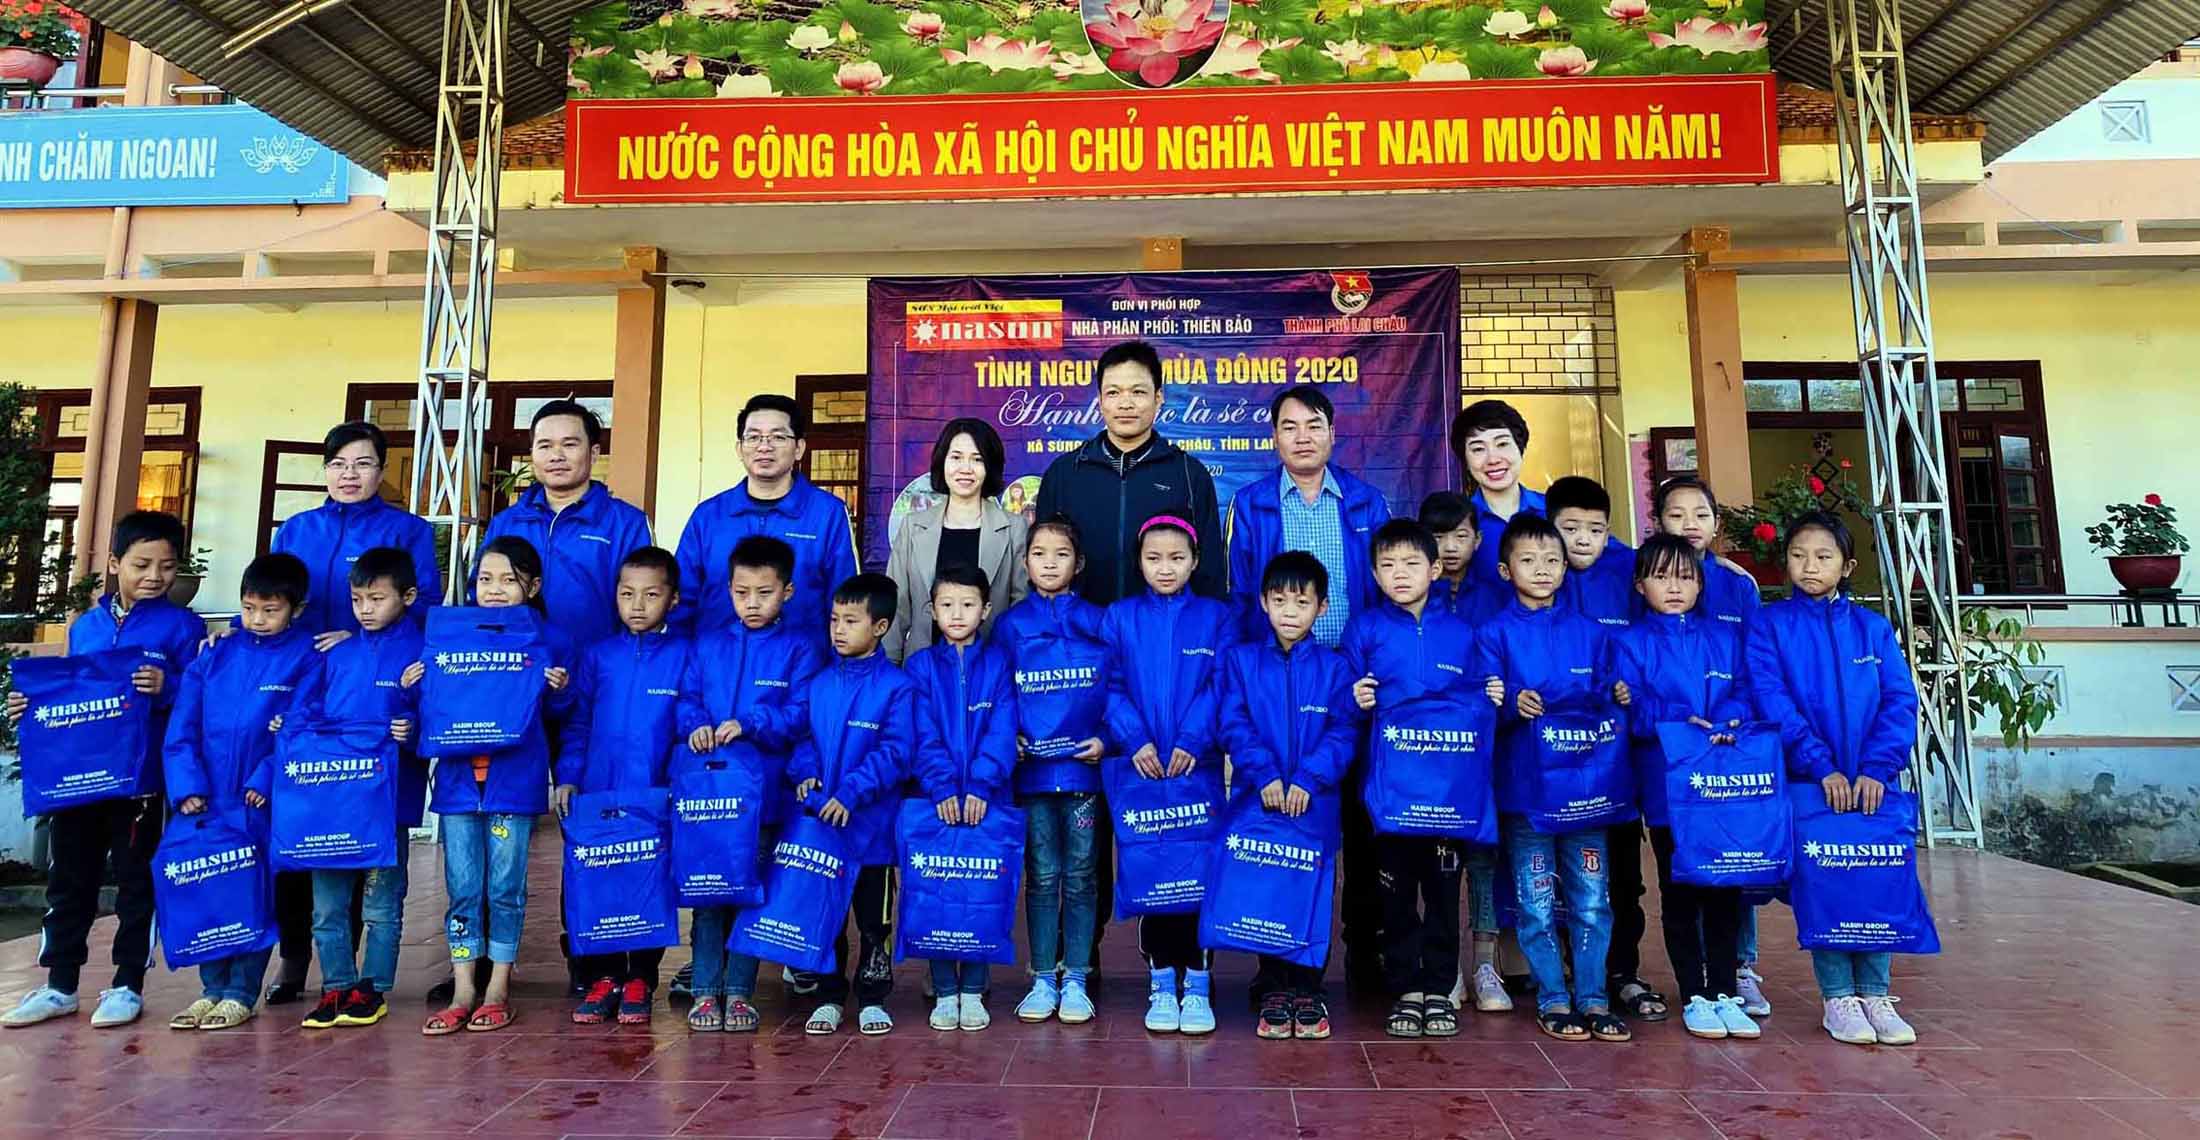 Đại diện lãnh đạo Thành đoàn Lai Châu, Công ty TNHH Sơn Nam Kinh tặng áo ấm cho học sinh Trường Tiểu học Sùng Phài (thành phố Lai Châu).